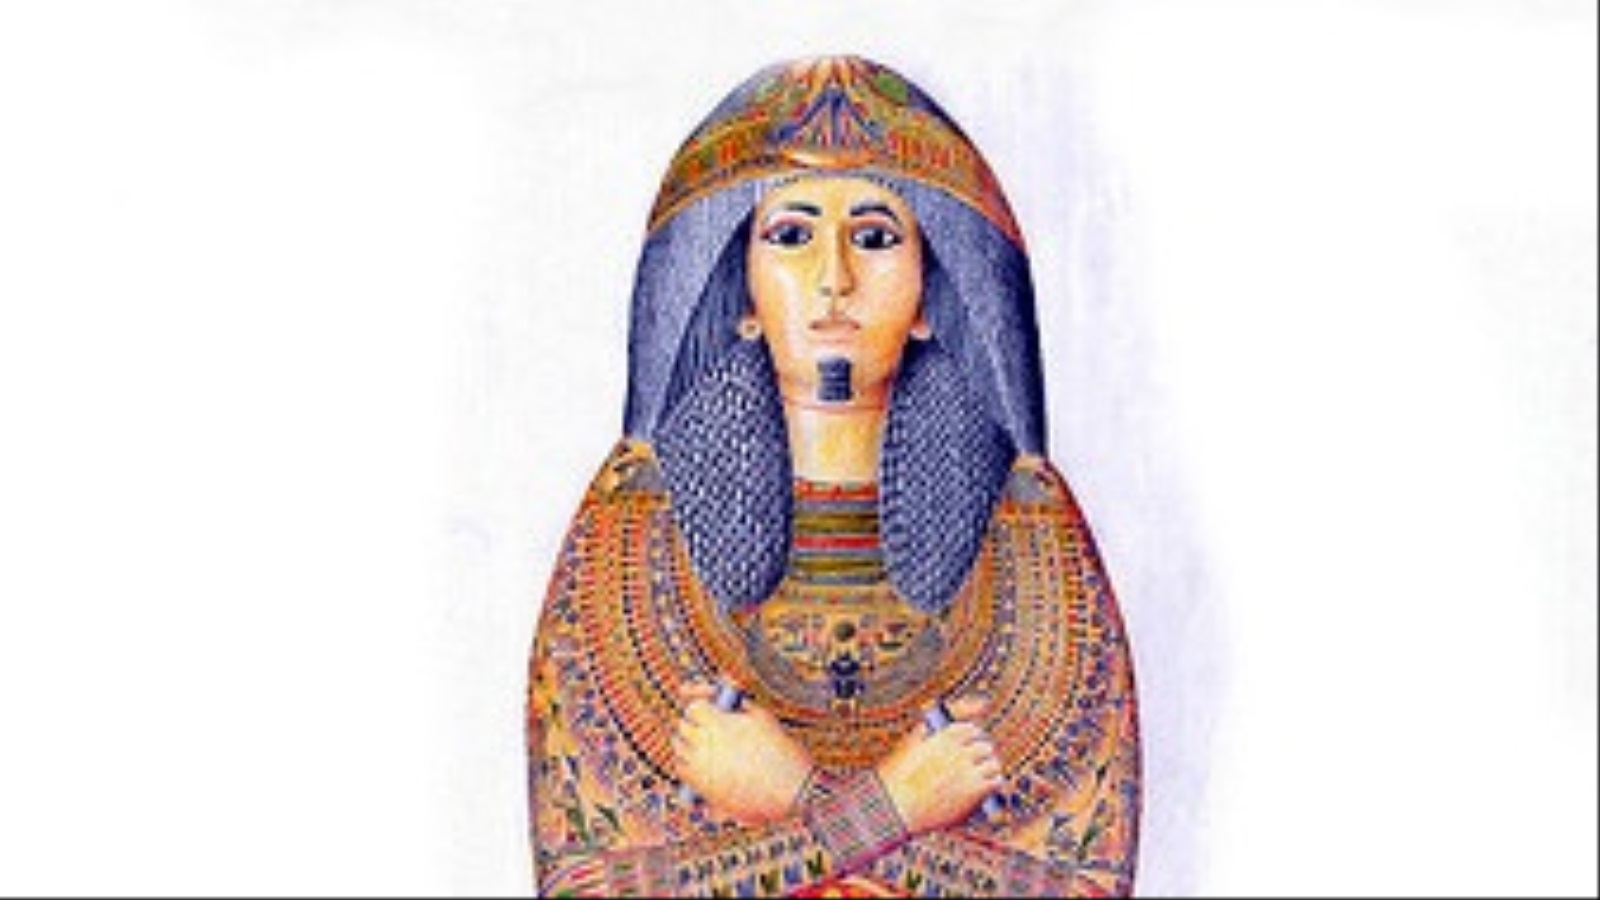 ‪محاكاة للتابوت الأصلي للكاهن المصري نيسيامون الذي عاش عام 1100 قبل الميلاد (ويكيبيديا)‬ محاكاة للتابوت الأصلي للكاهن المصري نيسيامون الذي عاش عام 1100 قبل الميلاد (ويكيبيديا)